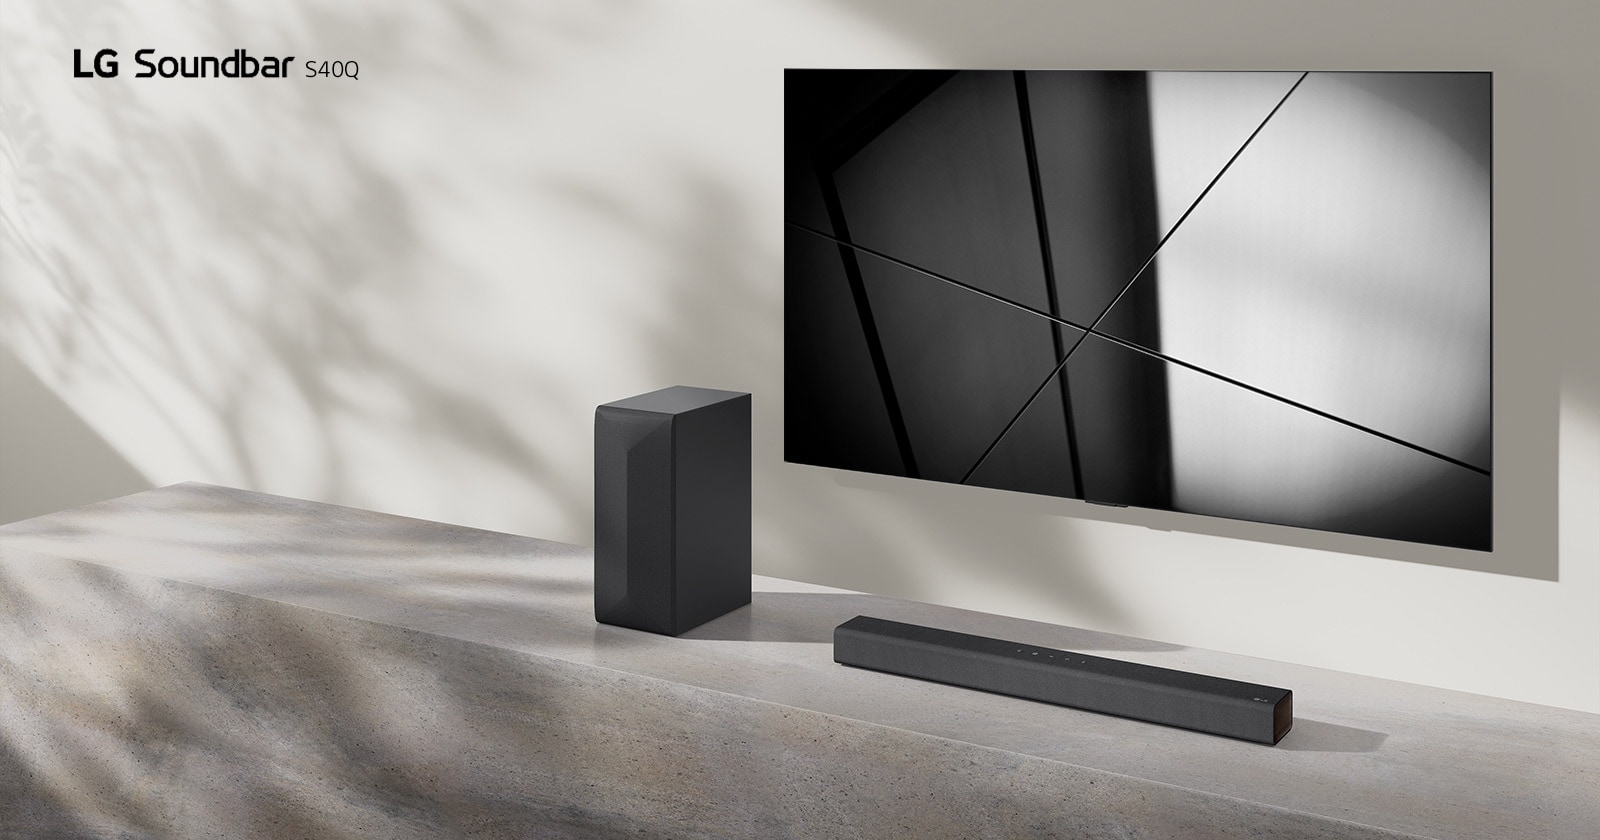 Το LG sound bar S60Q και μια τηλεόραση της LG τοποθετημένα μαζί στο σαλόνι. Η τηλεόραση είναι αναμμένη και δείχνει μια εικόνα με γεωμετρικά σχήματα.